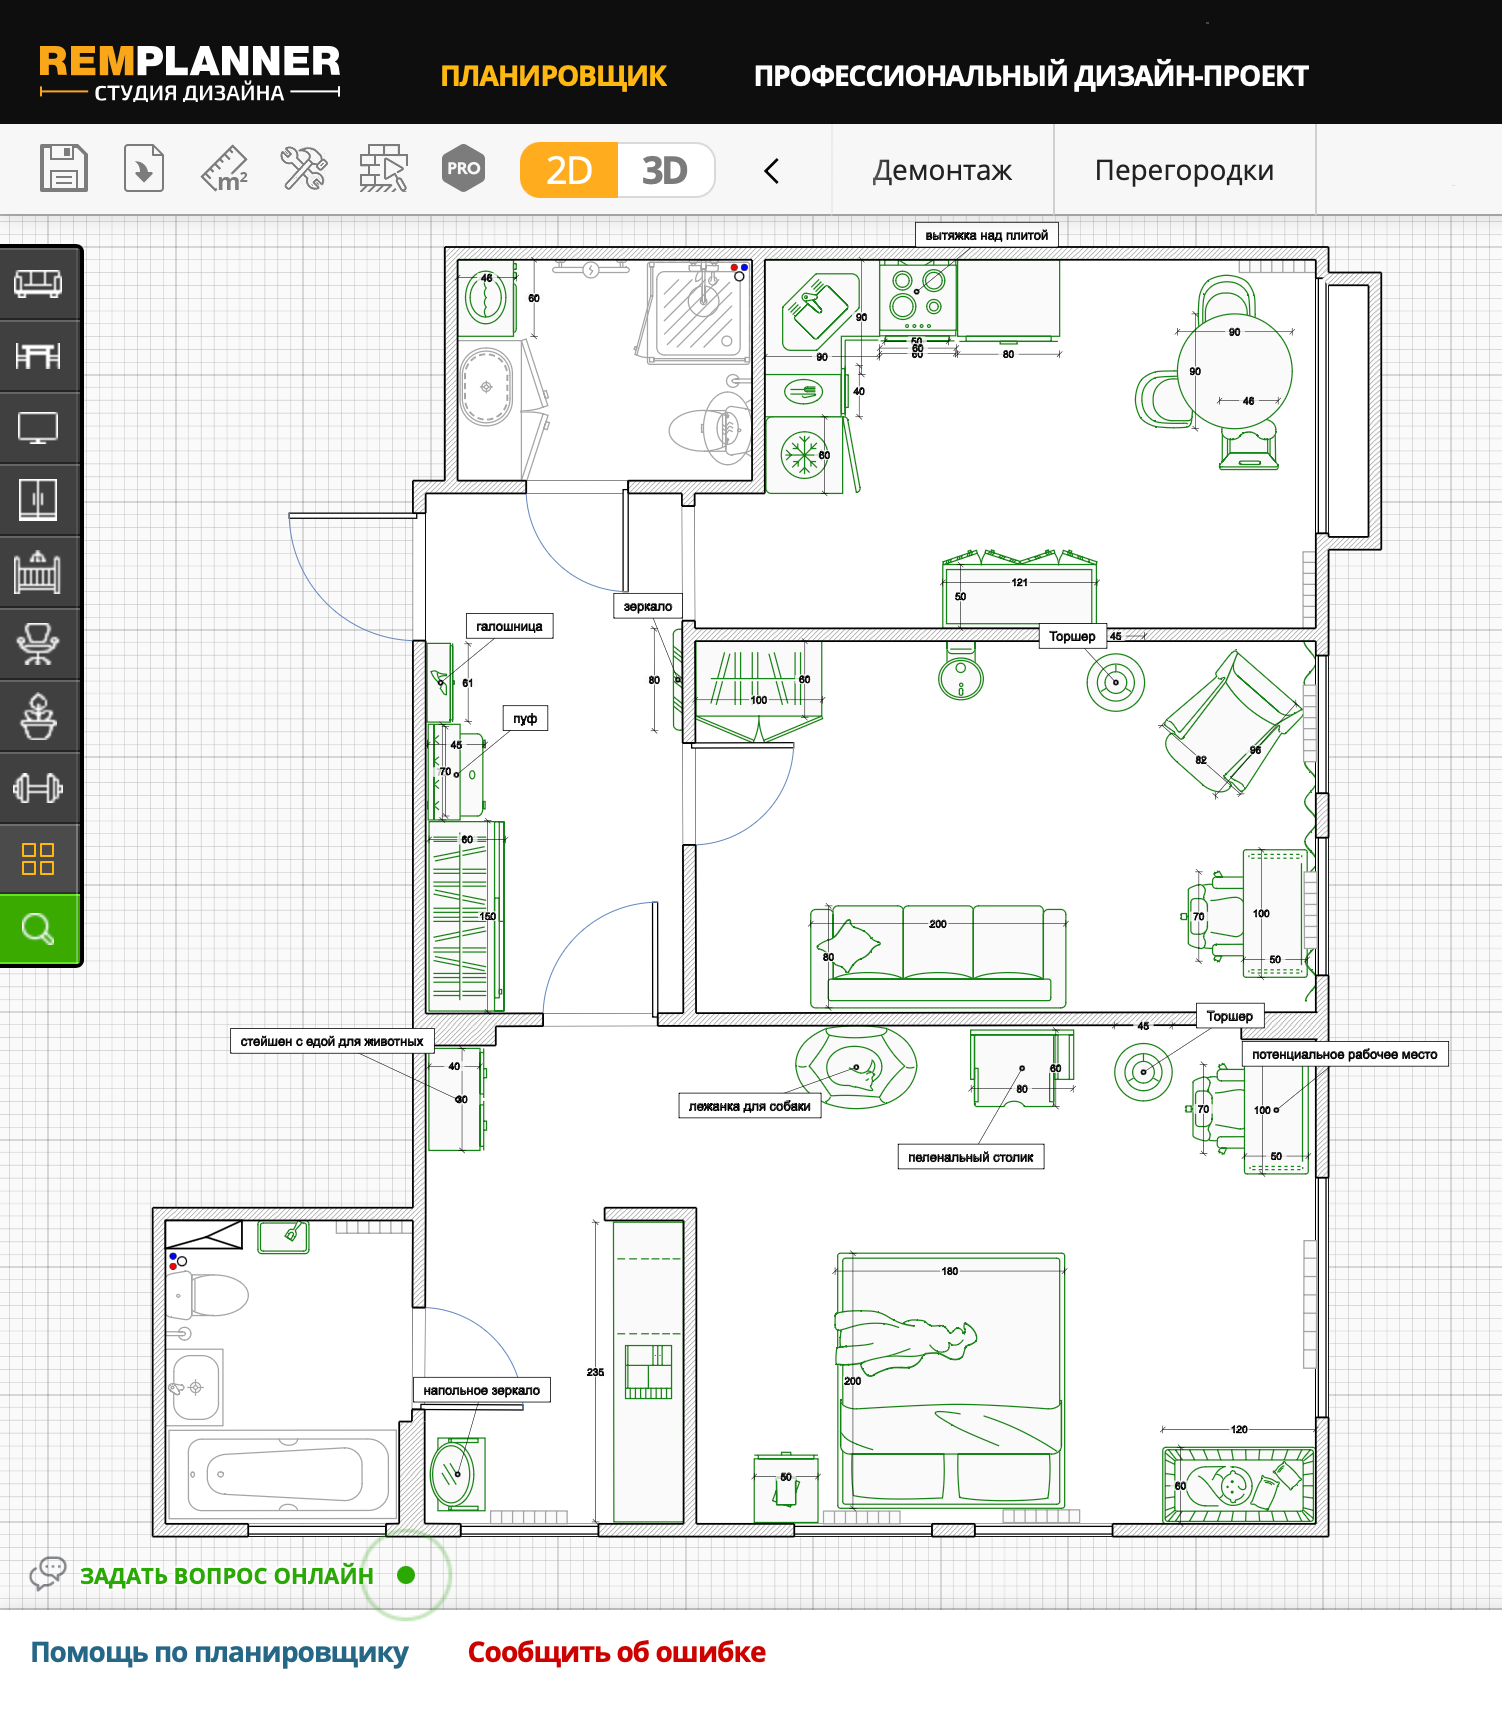 Вот так выглядит планировка квартиры в RemPlanner. Программа интуитивно понятная